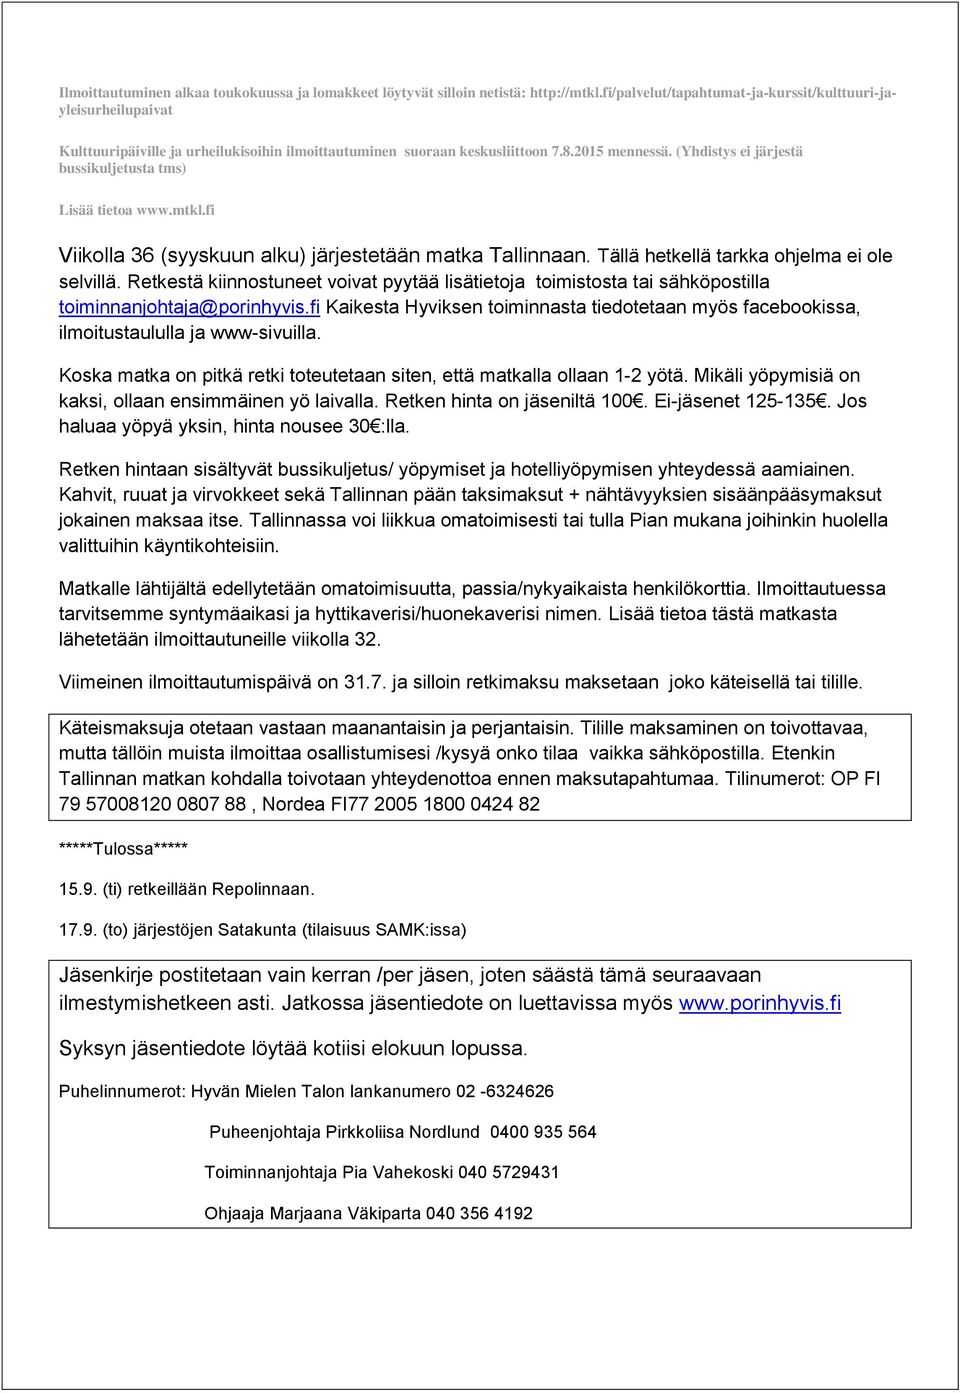 (Yhdistys ei järjestä bussikuljetusta tms) Lisää tietoa www.mtkl.fi Viikolla 36 (syyskuun alku) järjestetään matka Tallinnaan. Tällä hetkellä tarkka ohjelma ei ole selvillä.